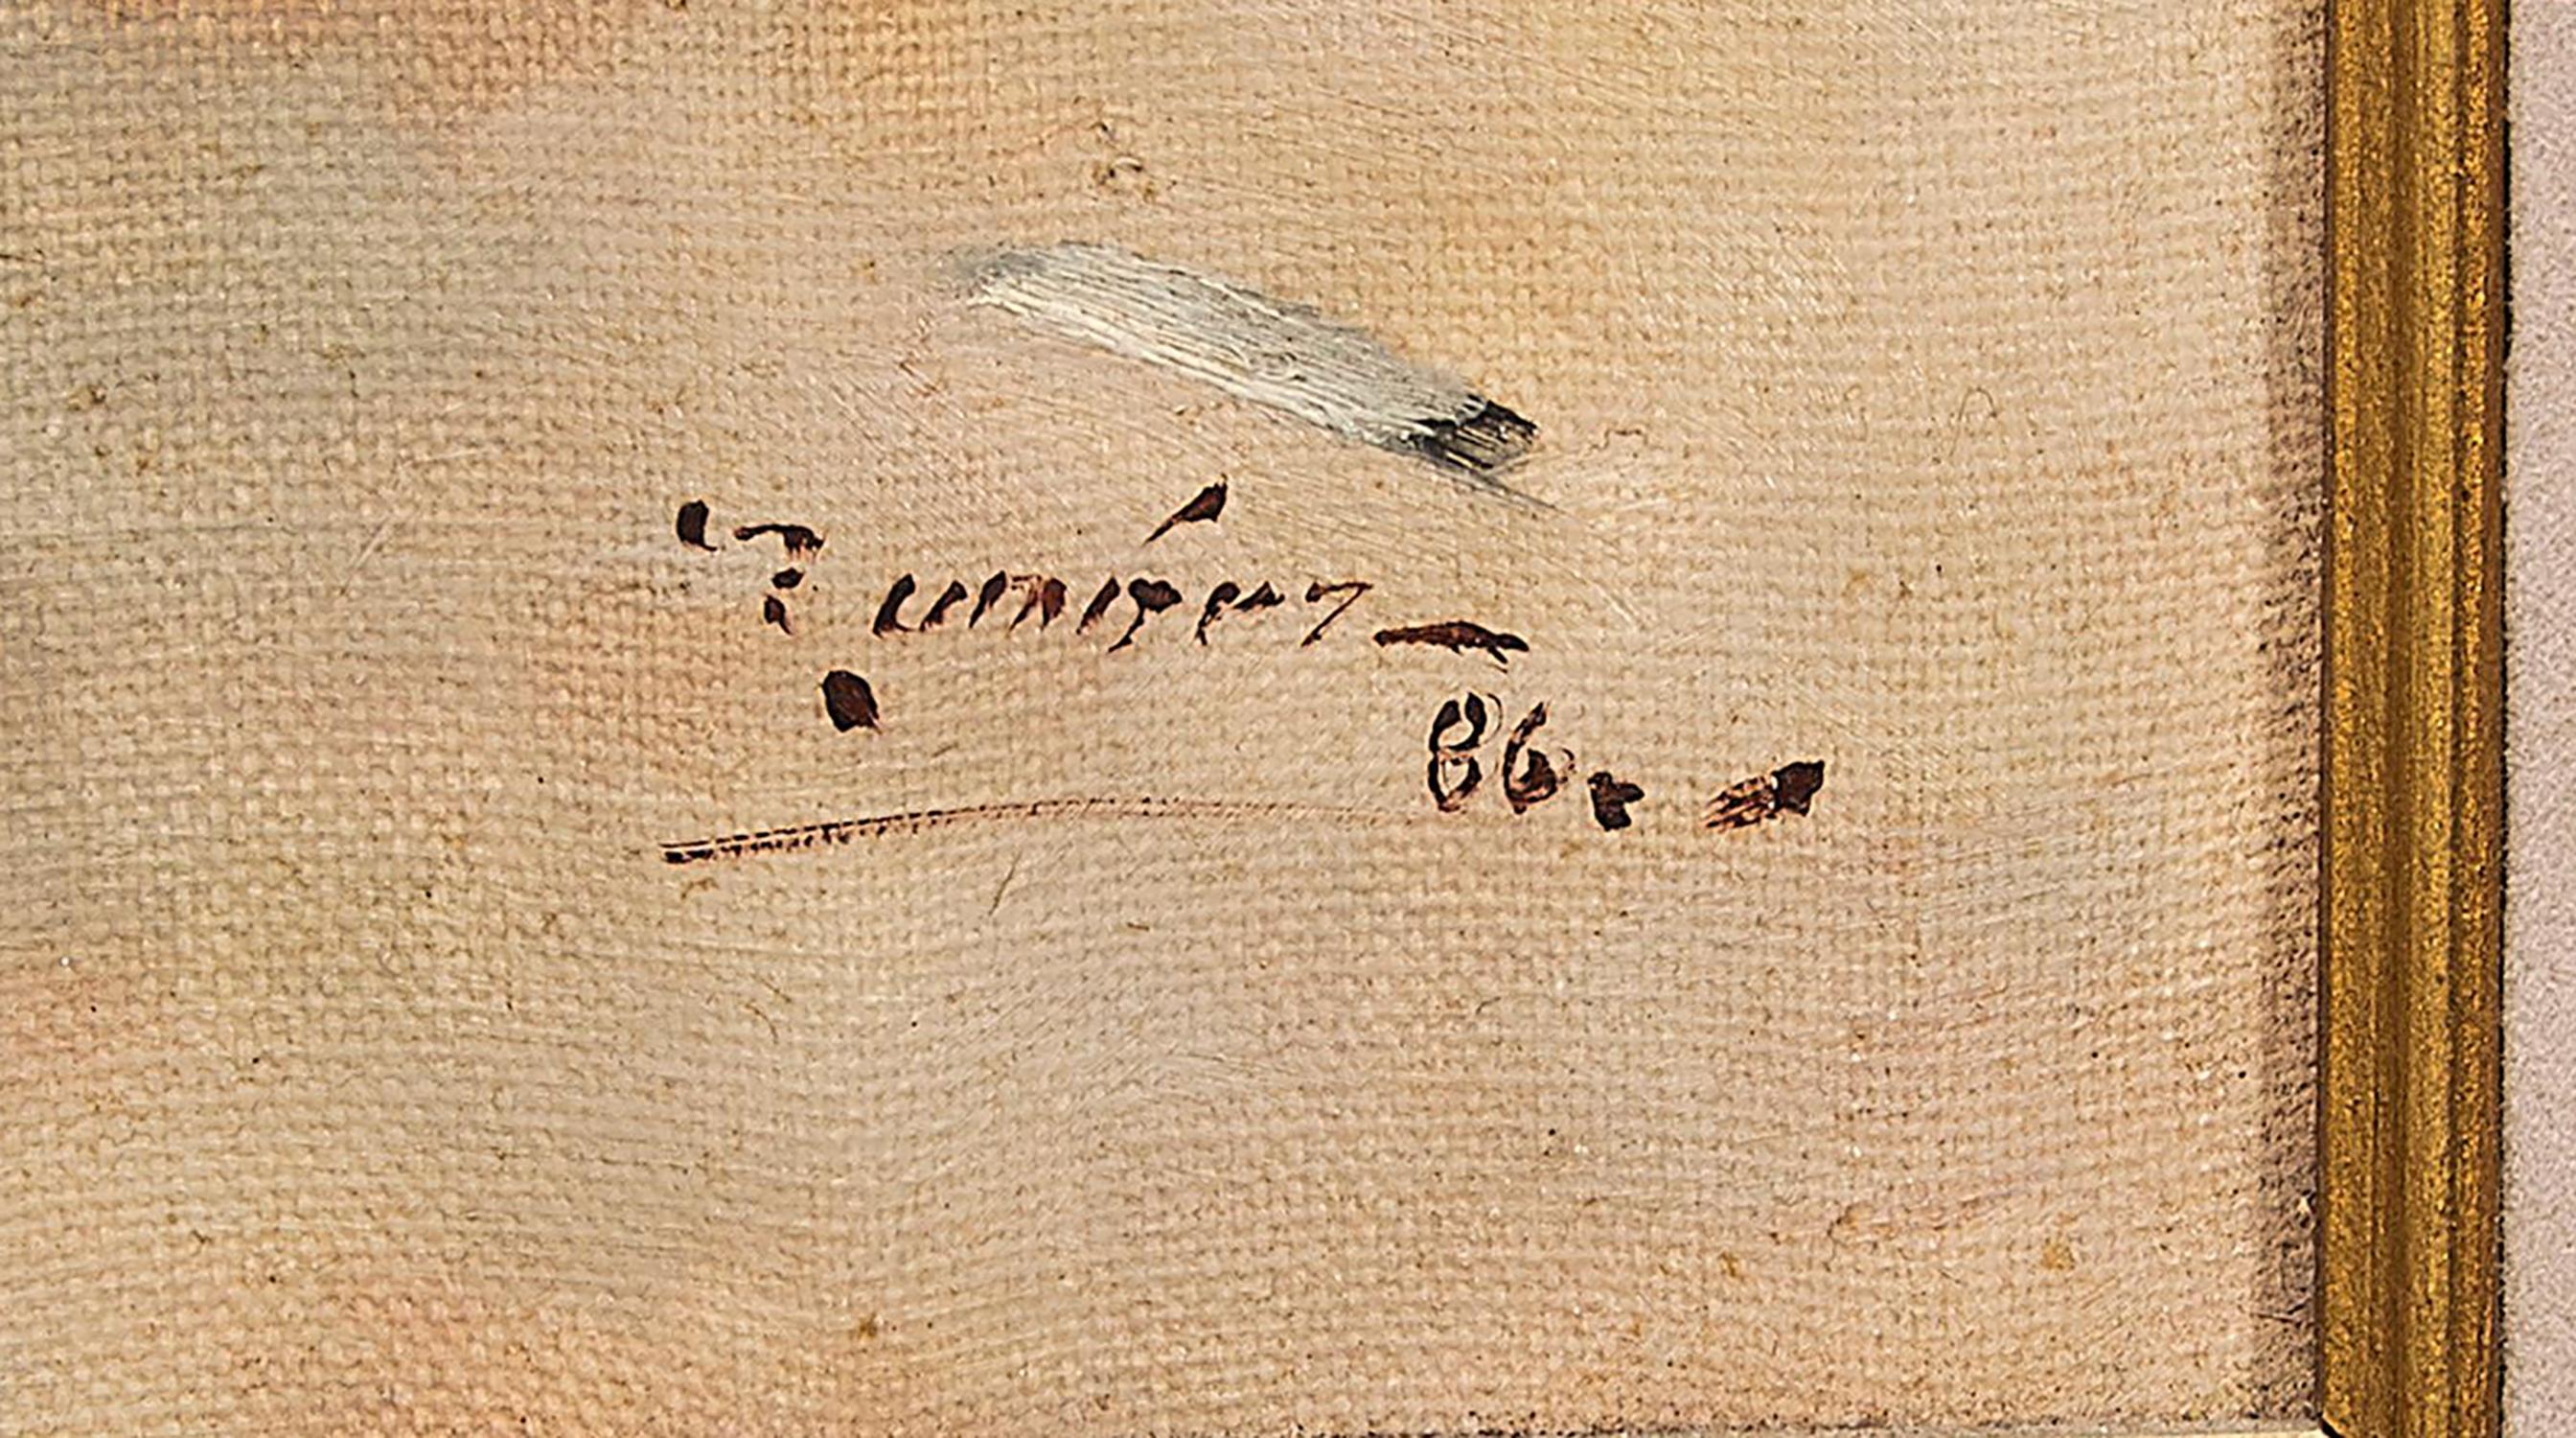 renoir signature on paintings